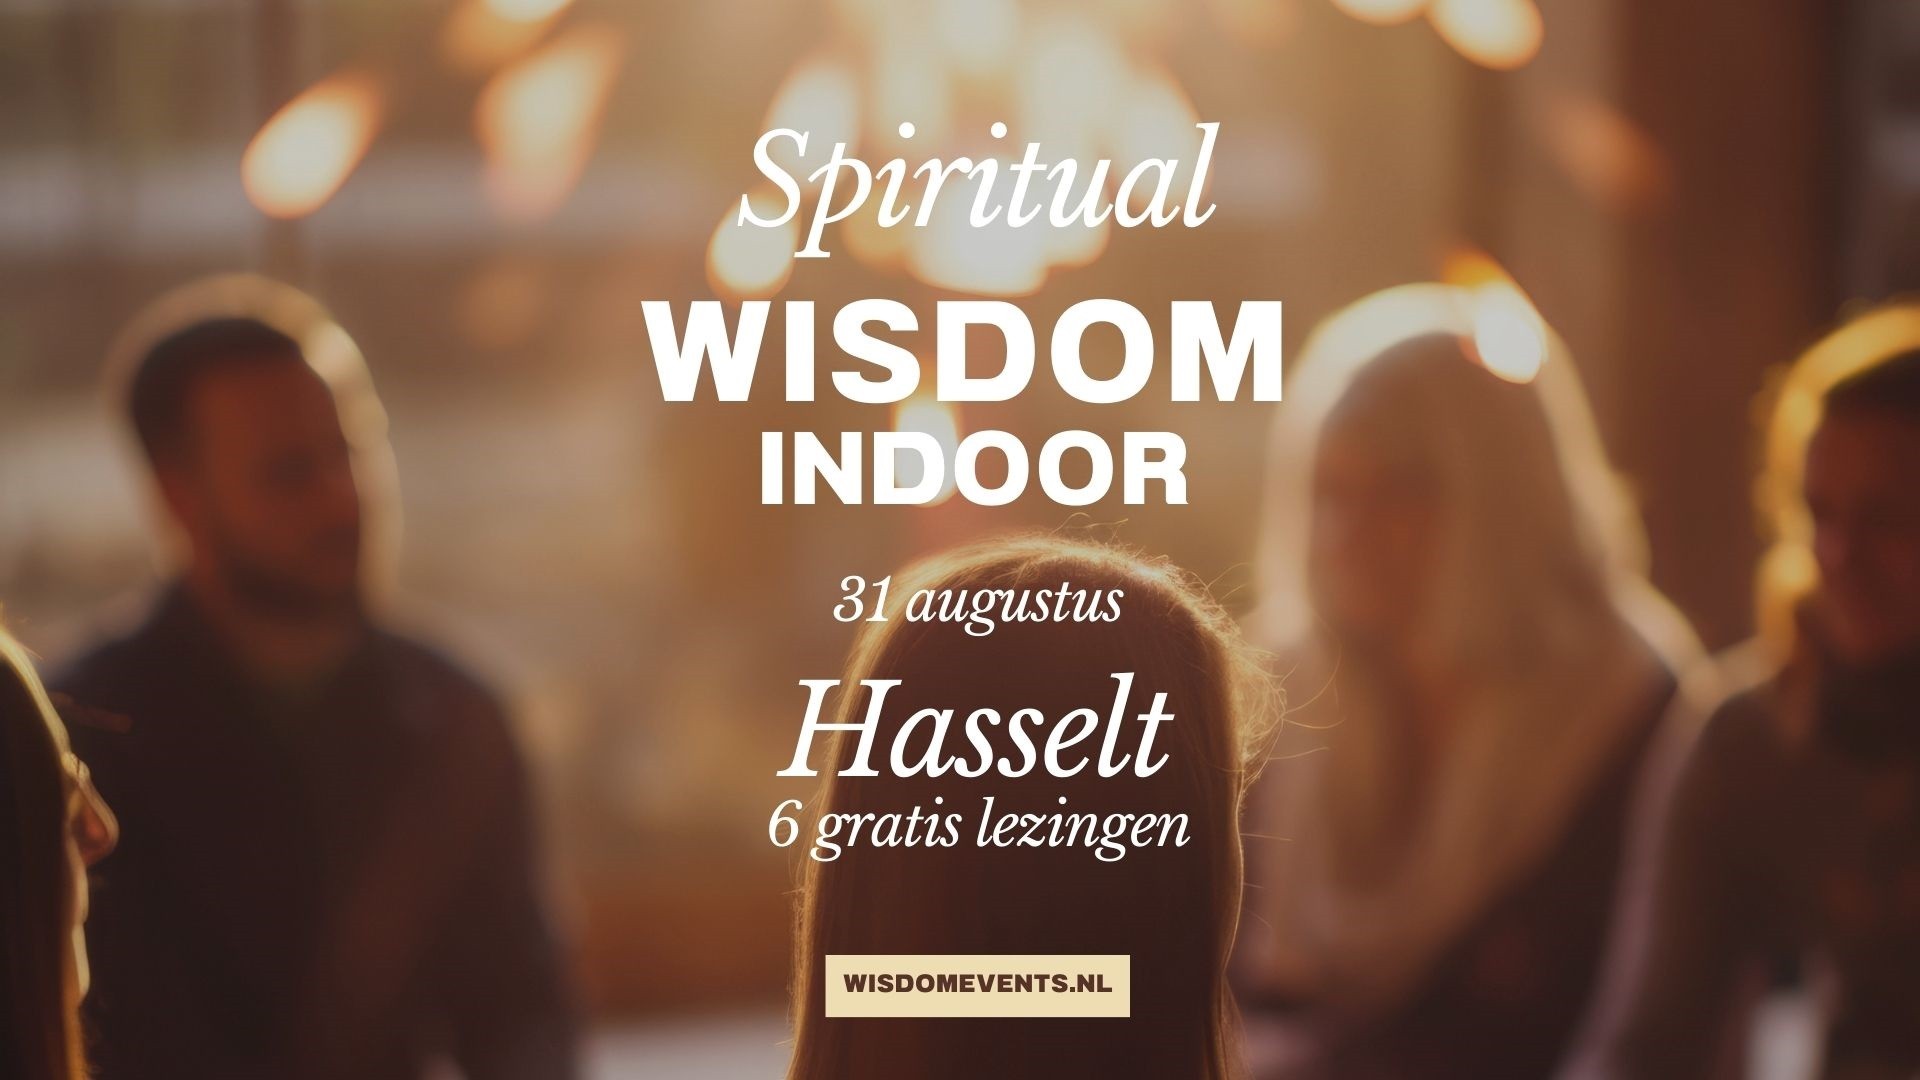 Spiritual Wisdom event in Hasselt 31 augustus 